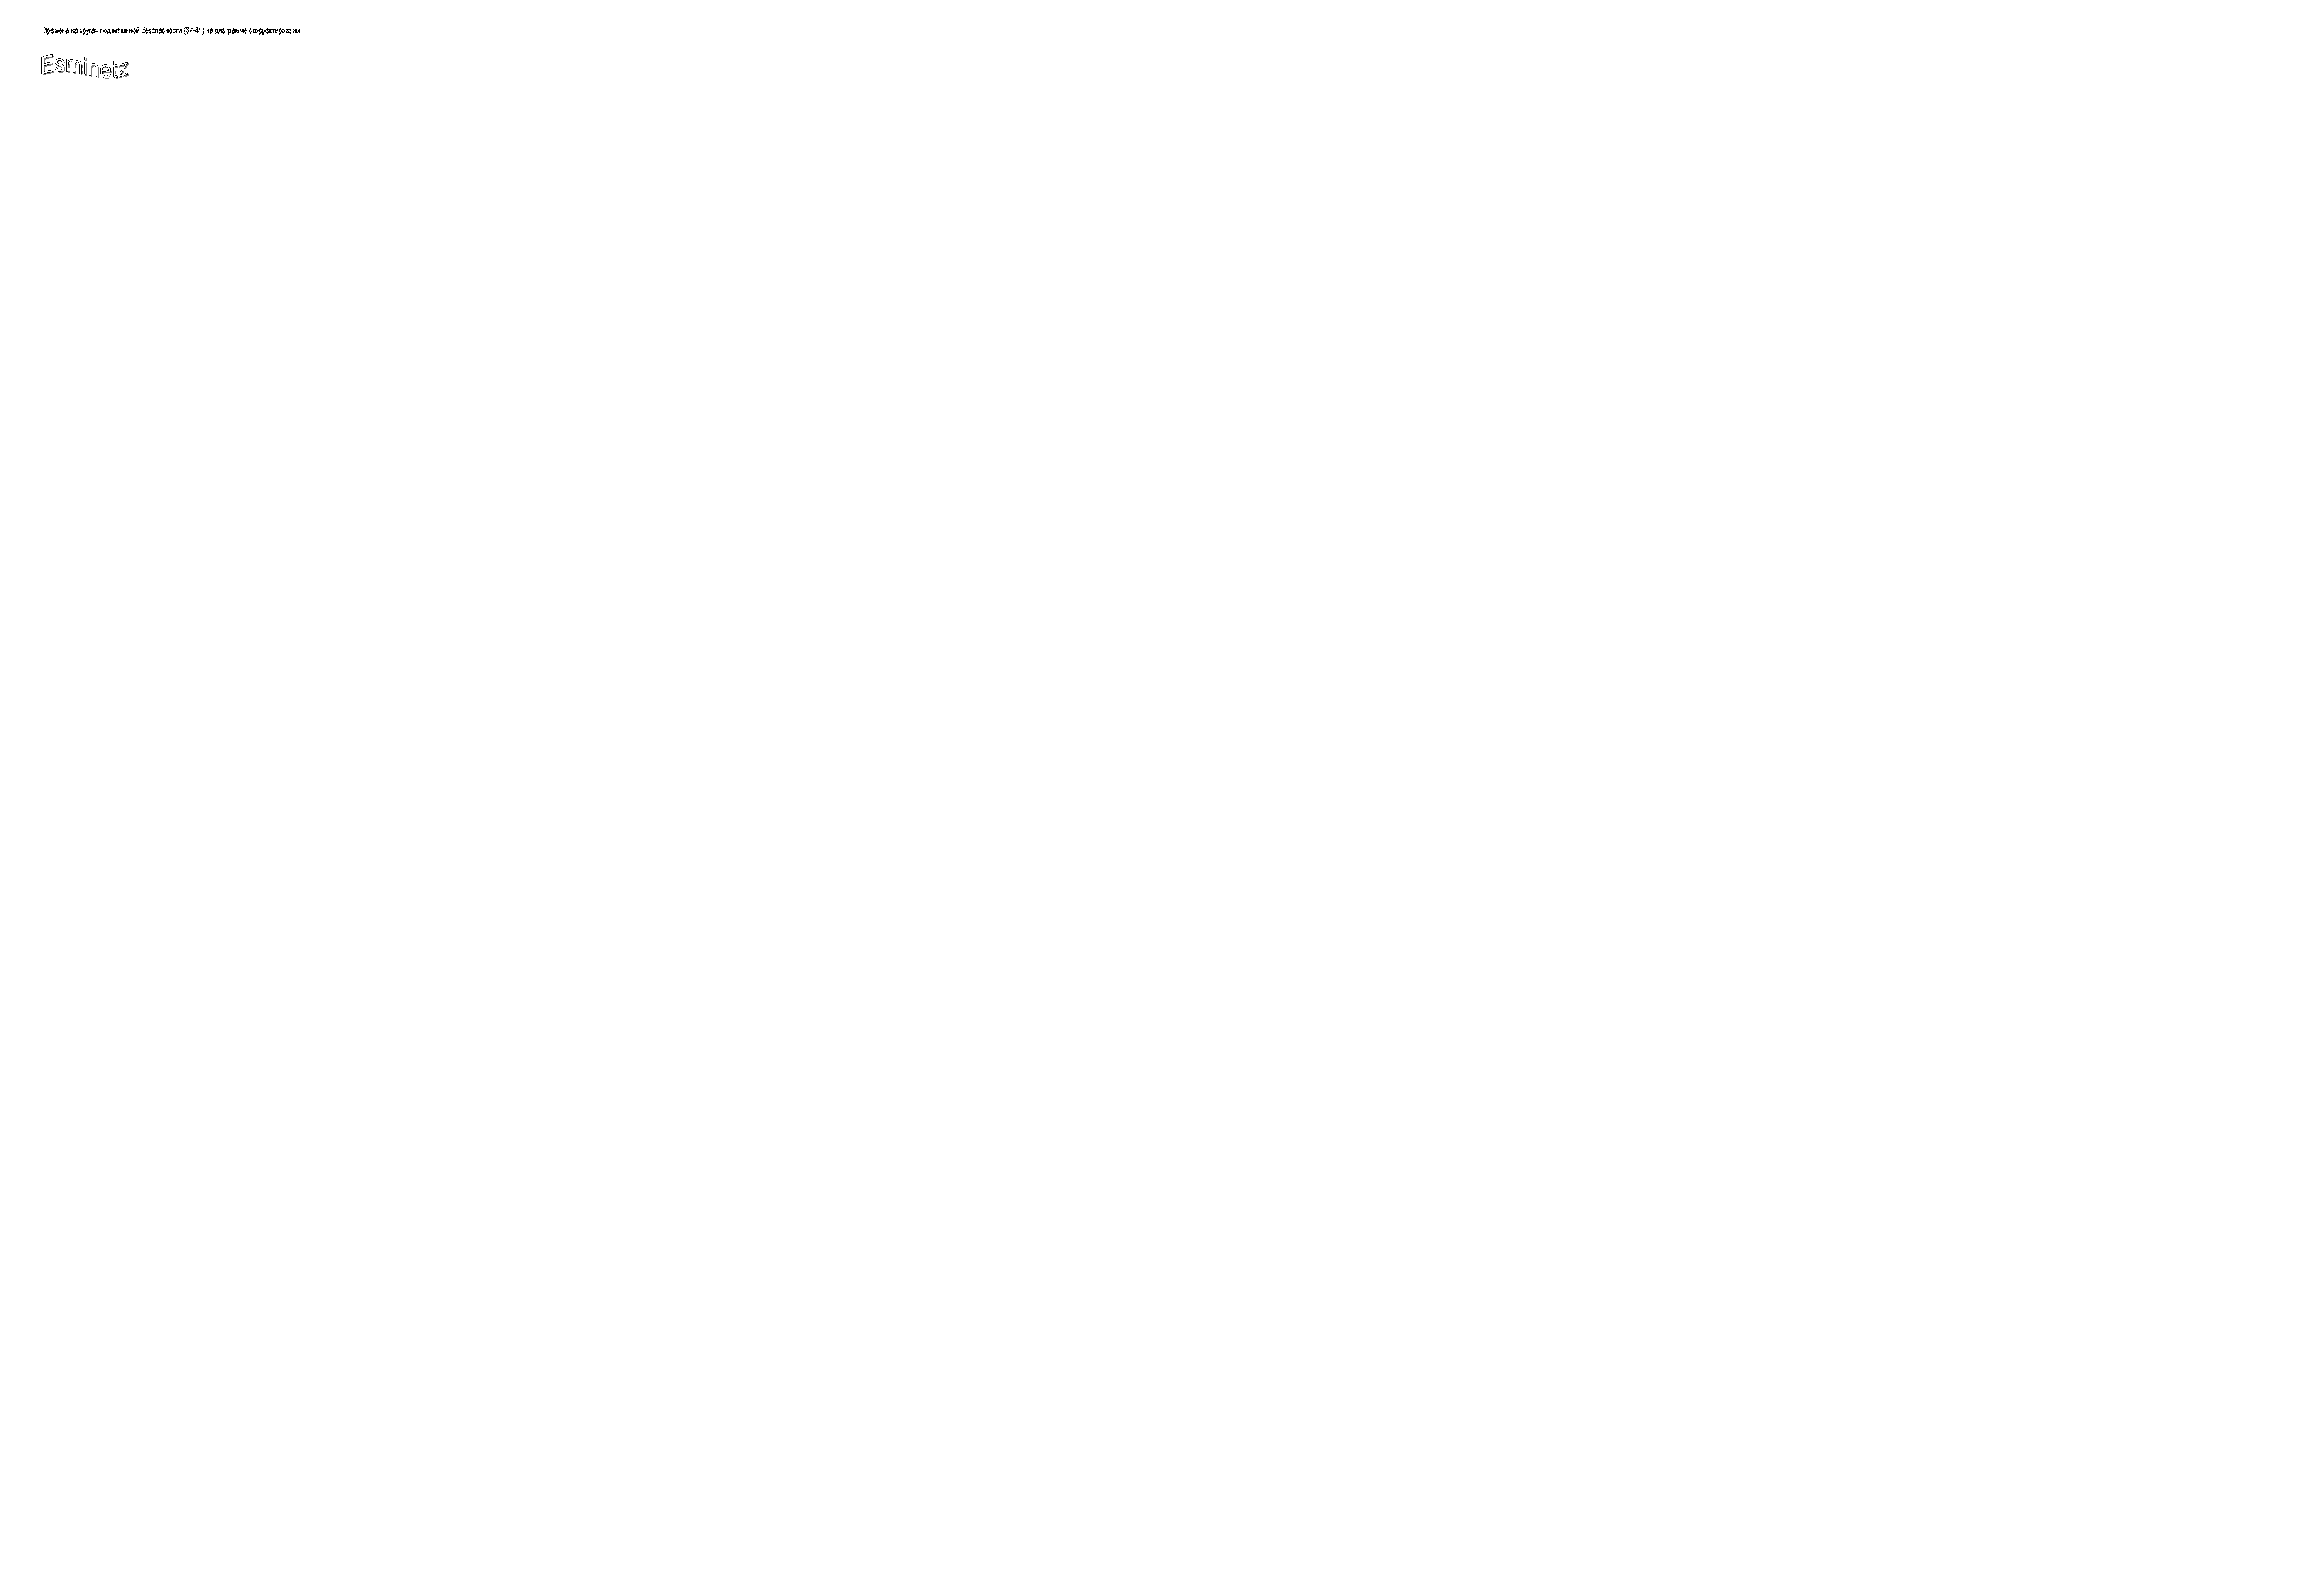 Esminetz,Времена на кругах под машиной безопасности (37-41) на диаграмме скорректированы